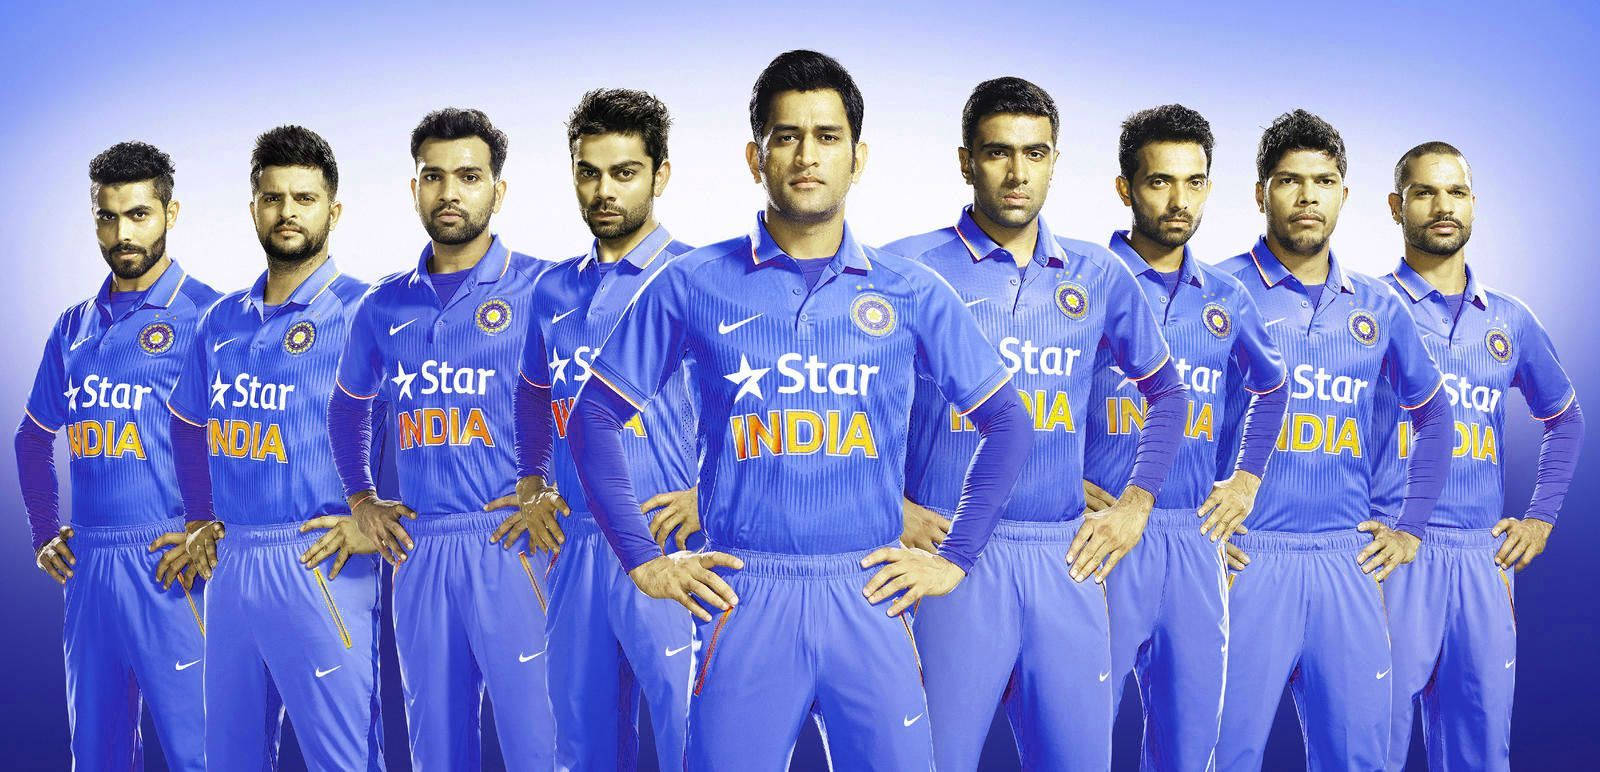 Sri Lanka cricket team i blå uniformer Wallpaper